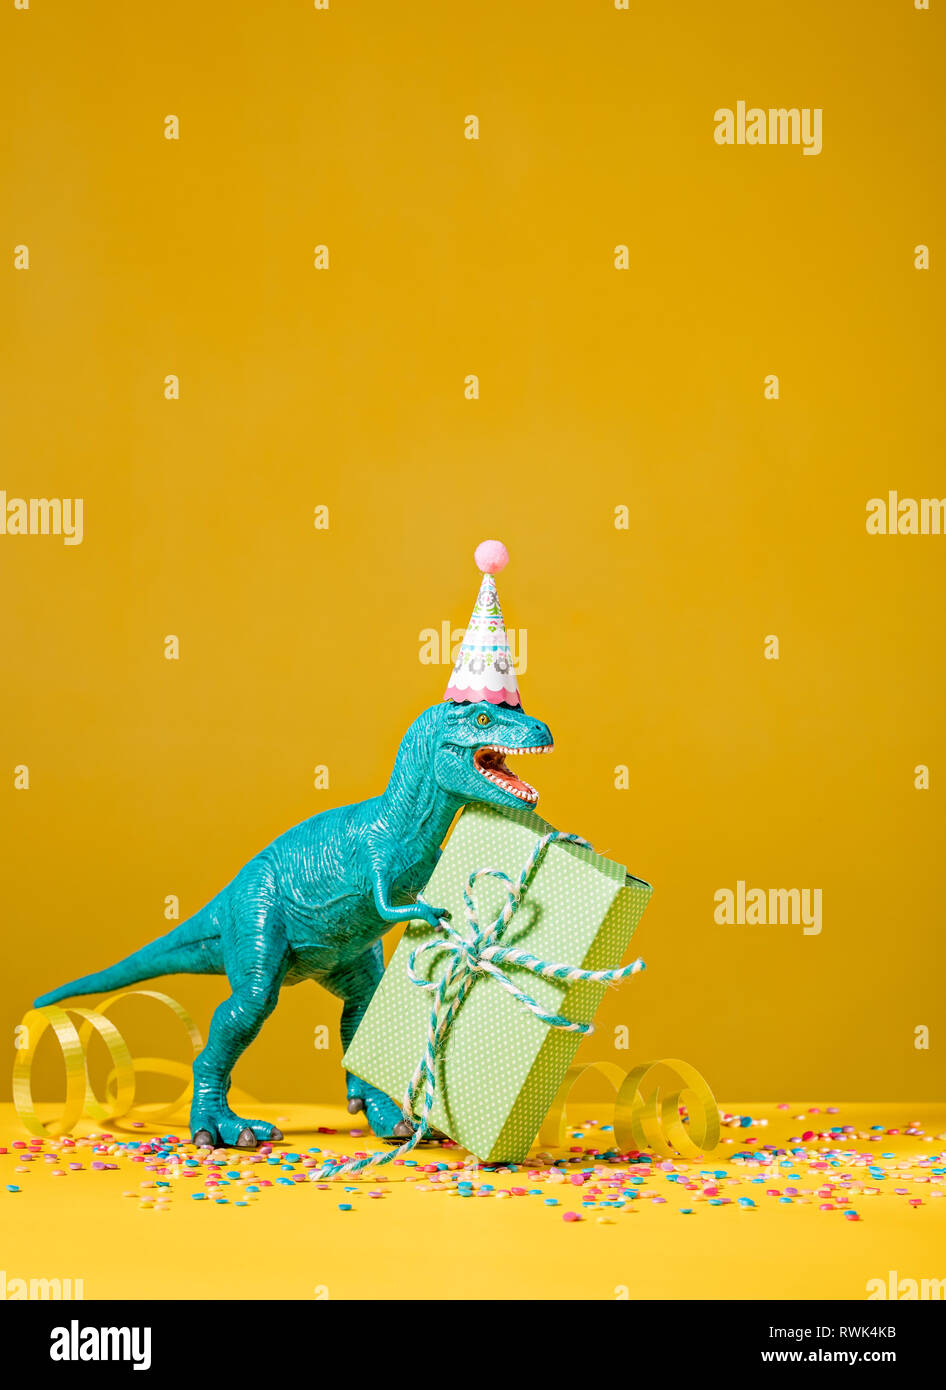 Spielzeug Dinosaurier mit Geburtstagsgeschenk das Tragen einer Partei hat auf einem gelben Hintergrund. Stockfoto